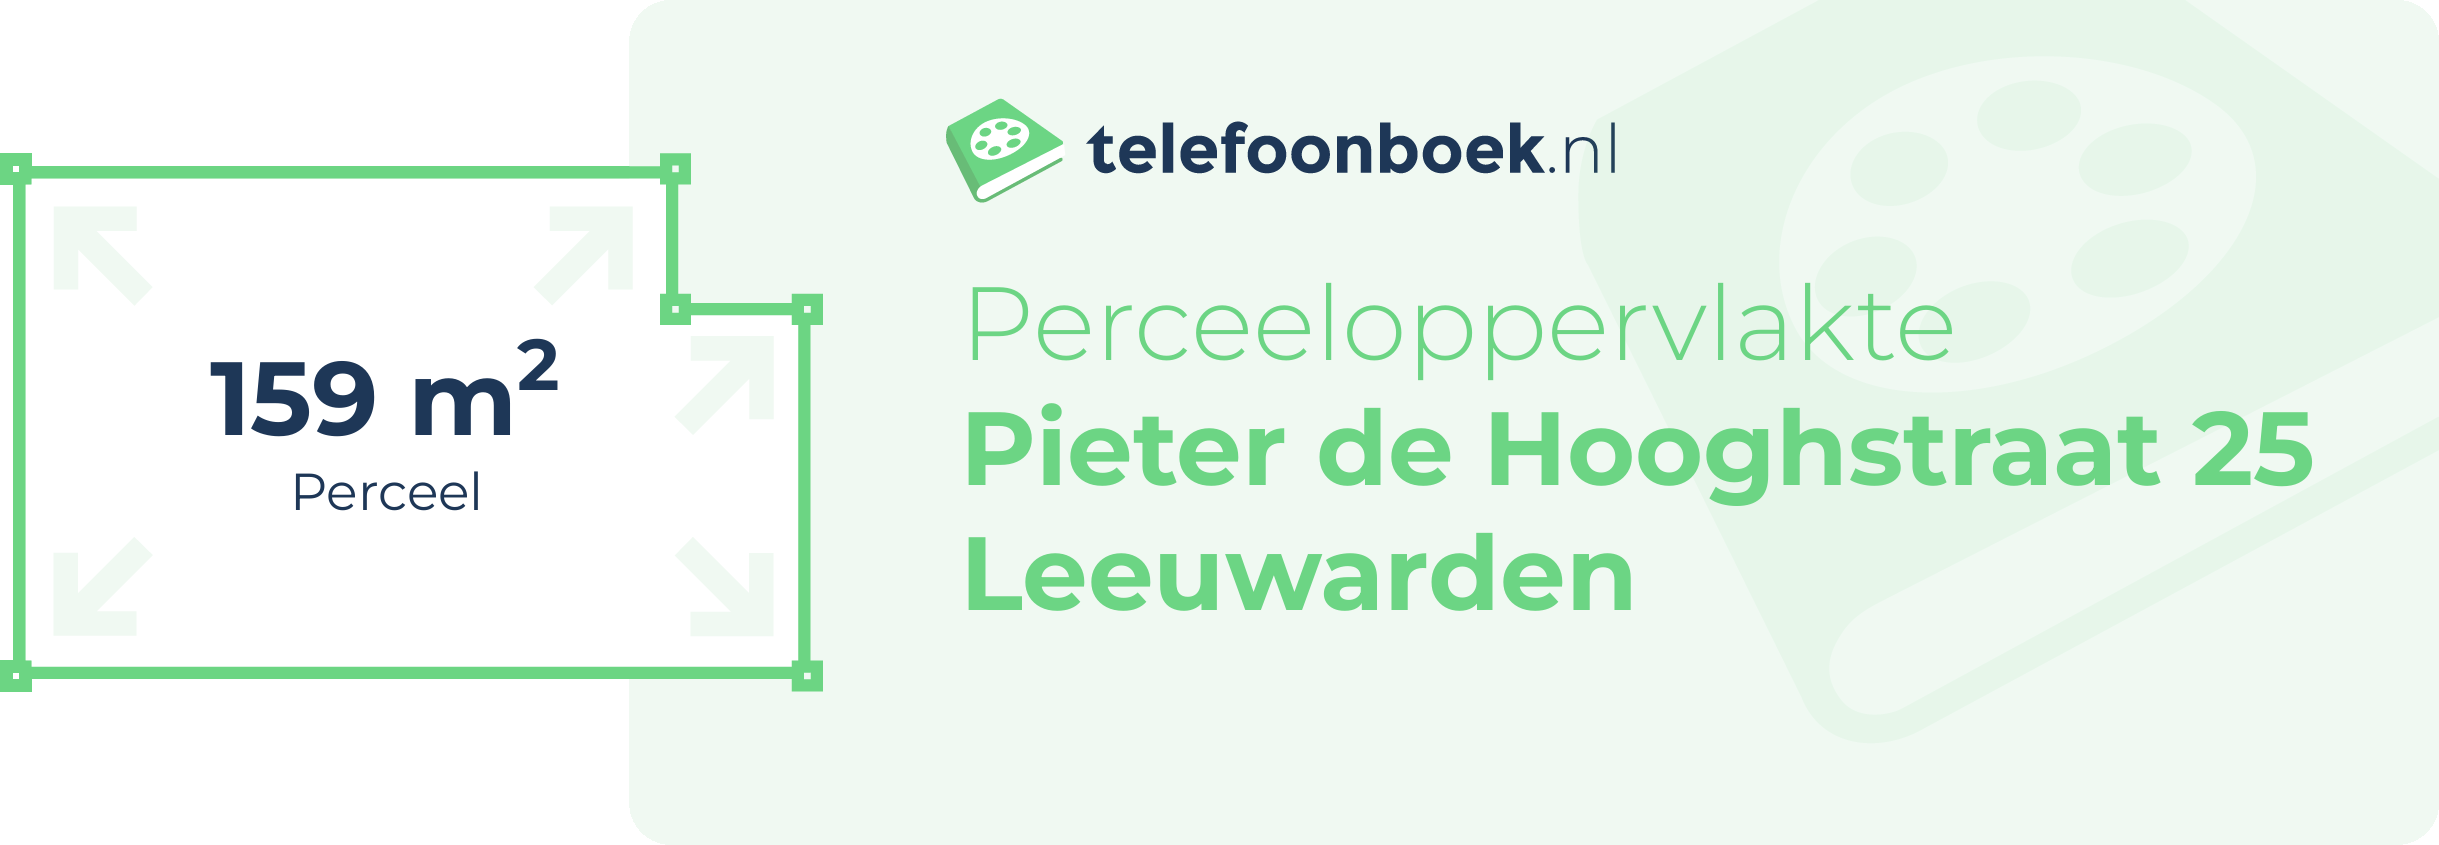 Perceeloppervlakte Pieter De Hooghstraat 25 Leeuwarden